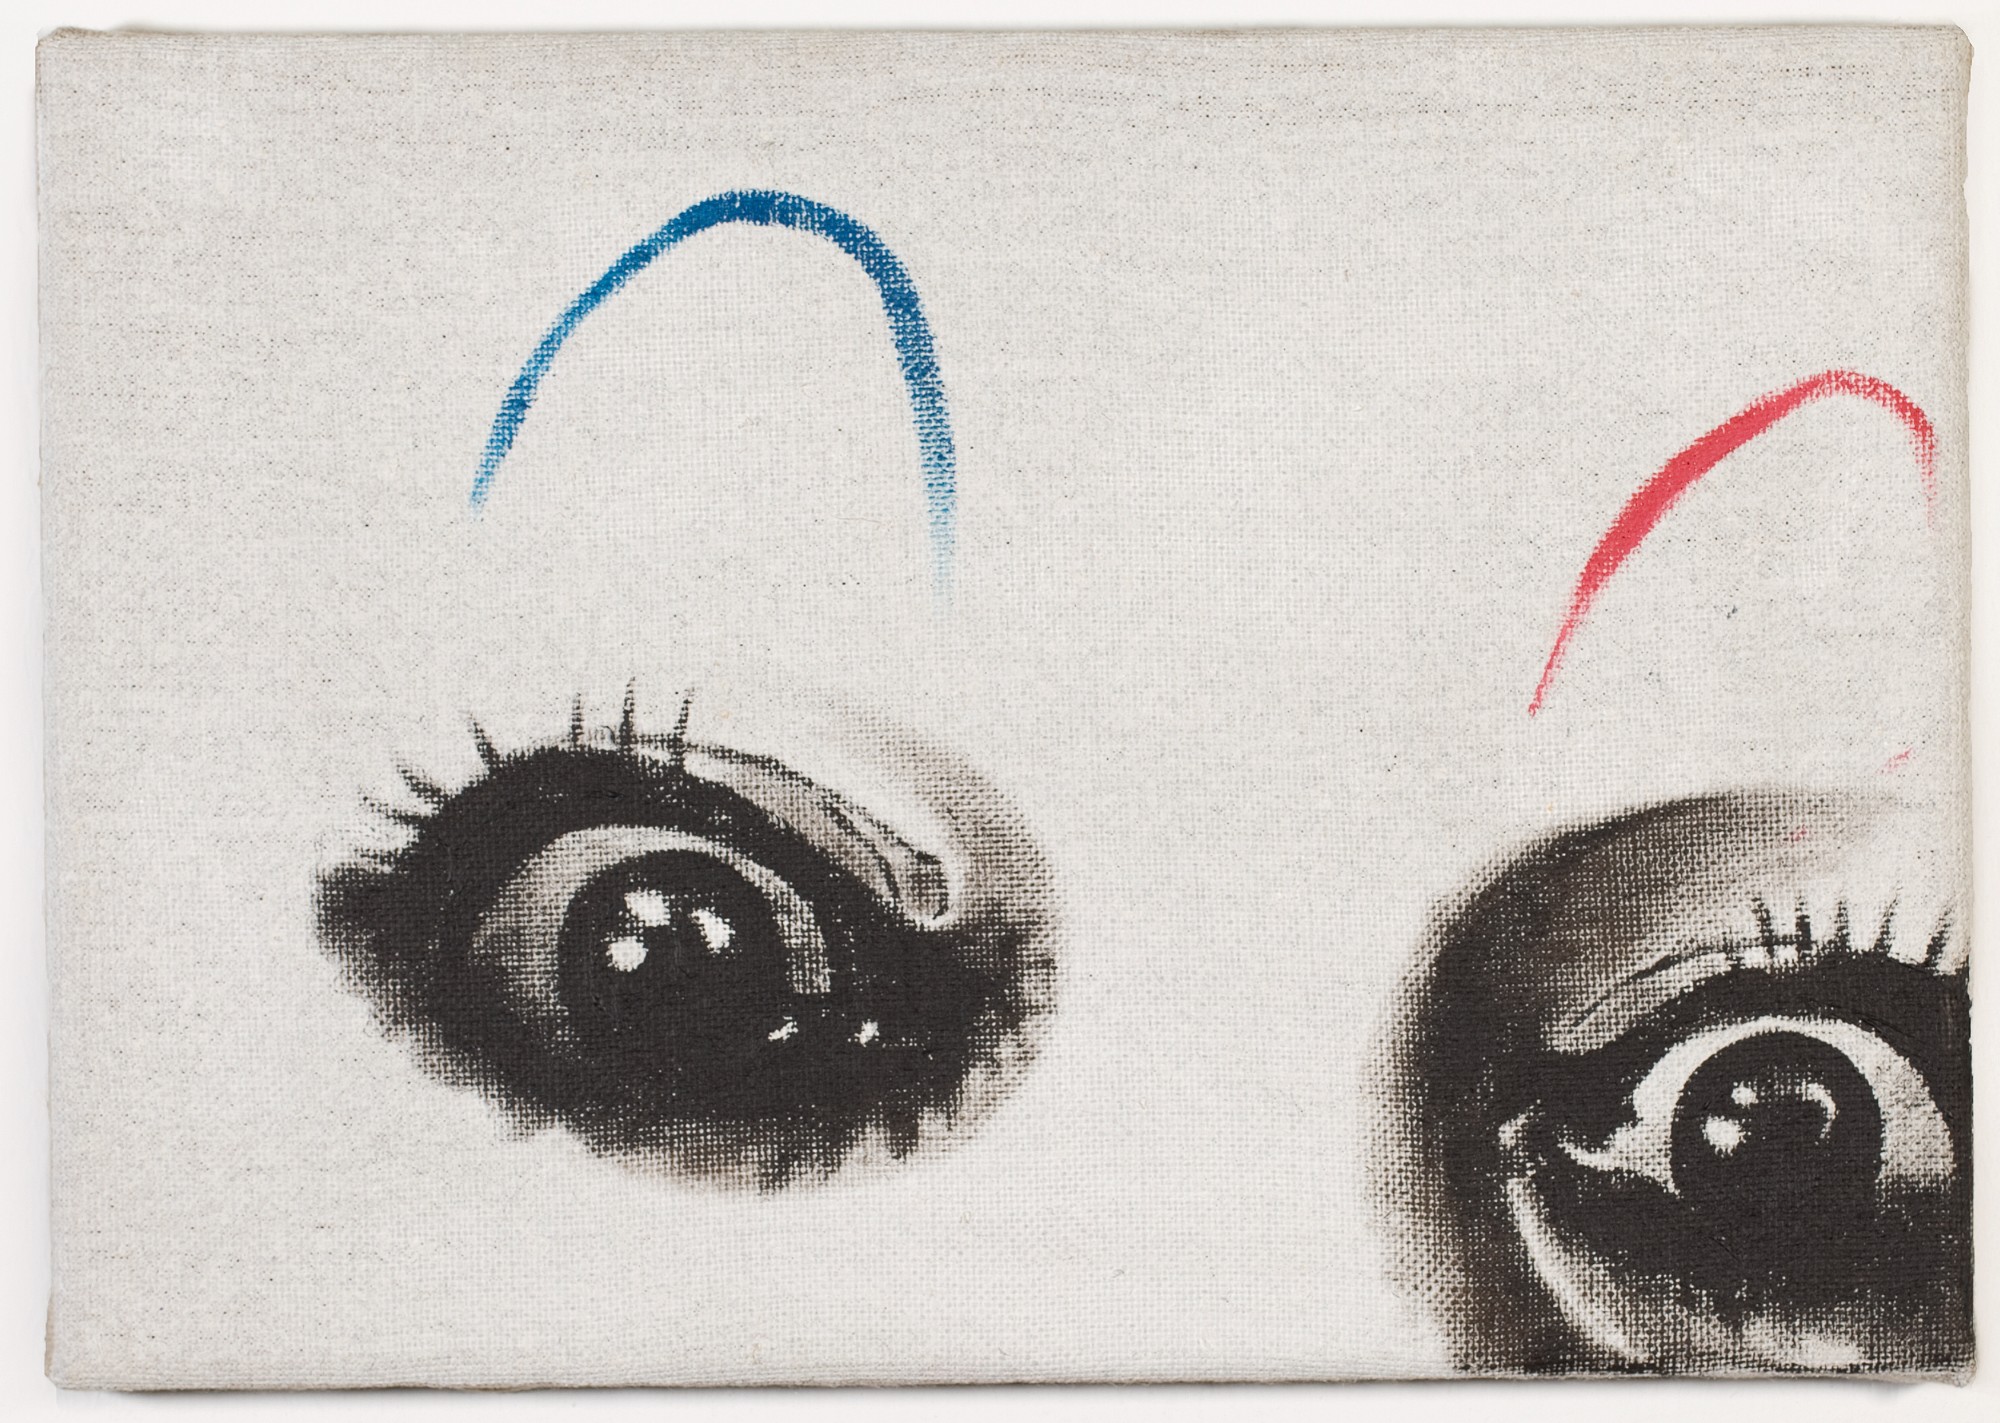 René Luckhardt, Untitled eyes, 2014, oil on canvas, 21 x 30 cm